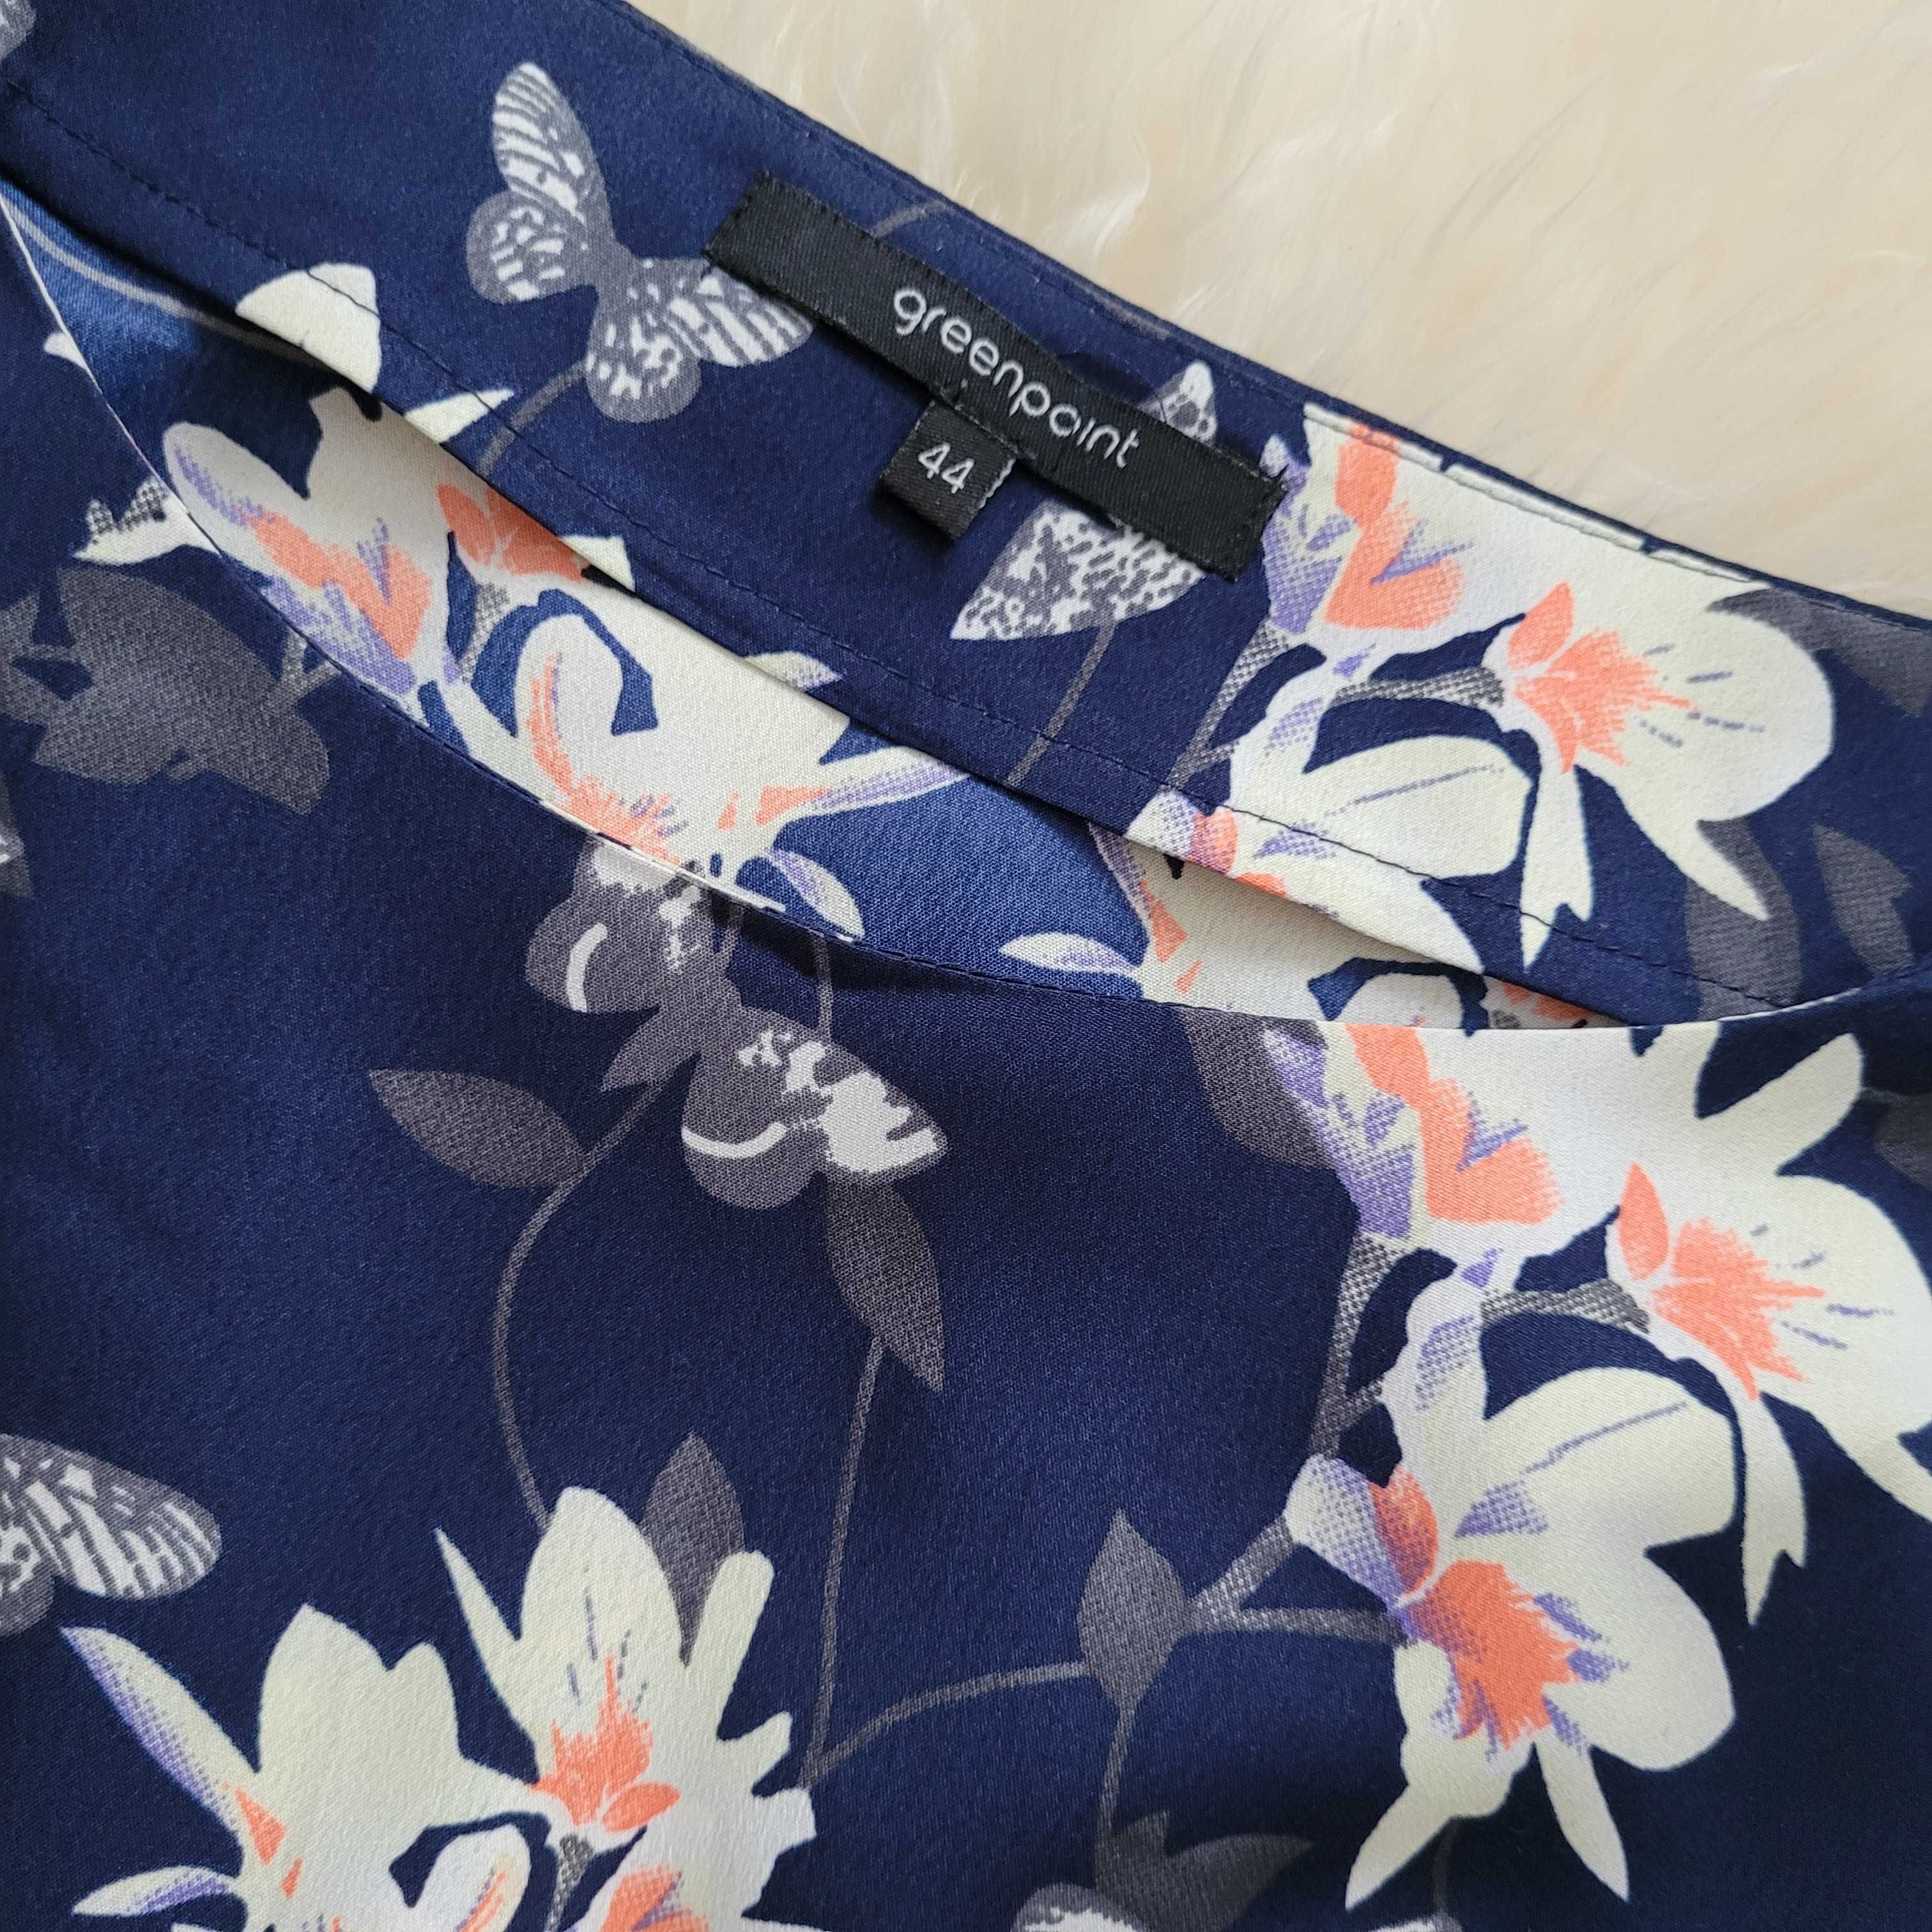 Greenpoint bluzka z kwiatuszkami roz. 44 L / XL - jak NOWA